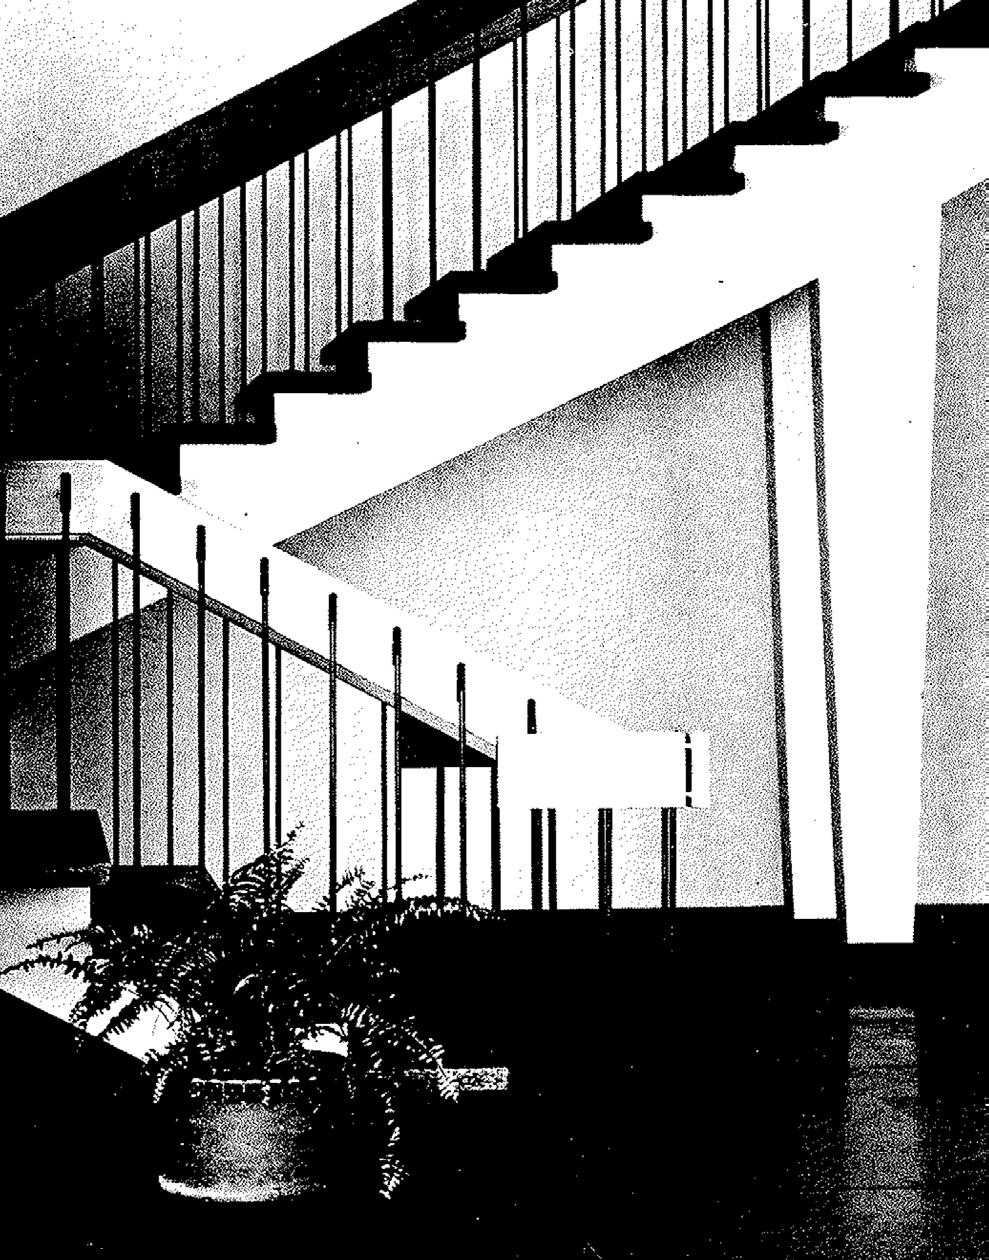 1965, vid öppnandet av sjukhuset, presenterar en byggnad av hög arkitektonisk kvalitet med spröda